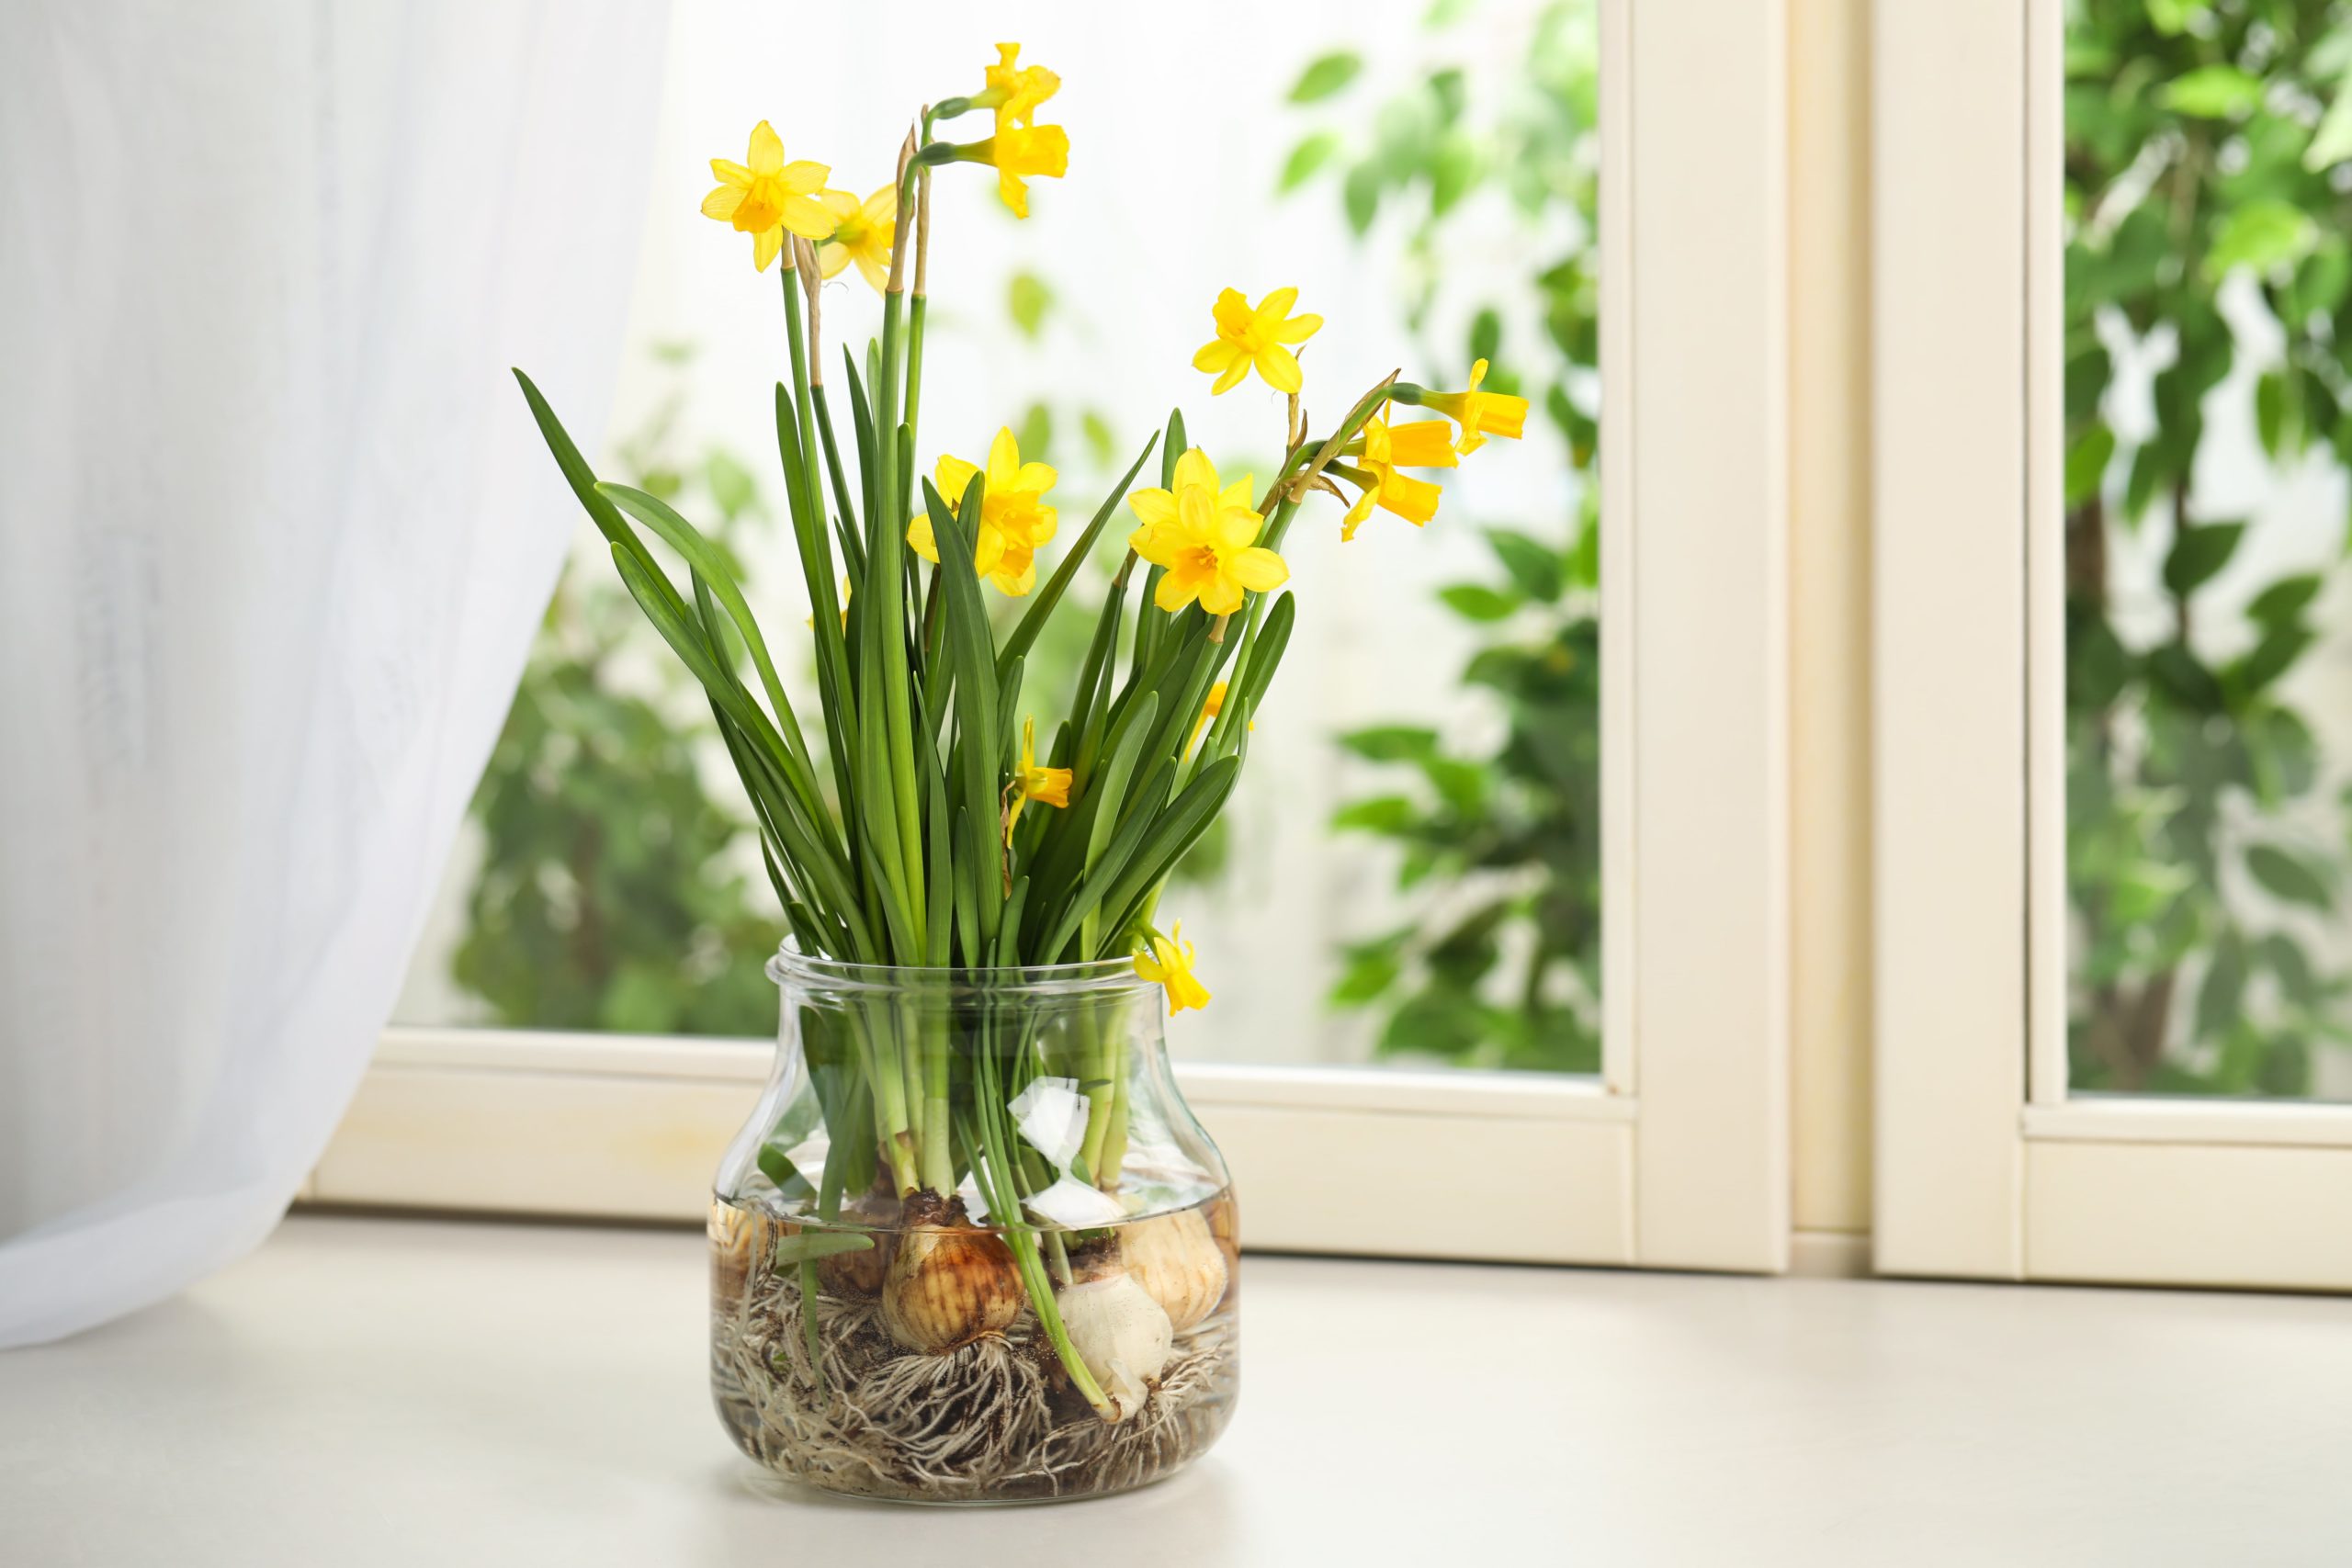 Indoor daffodil bulb plants